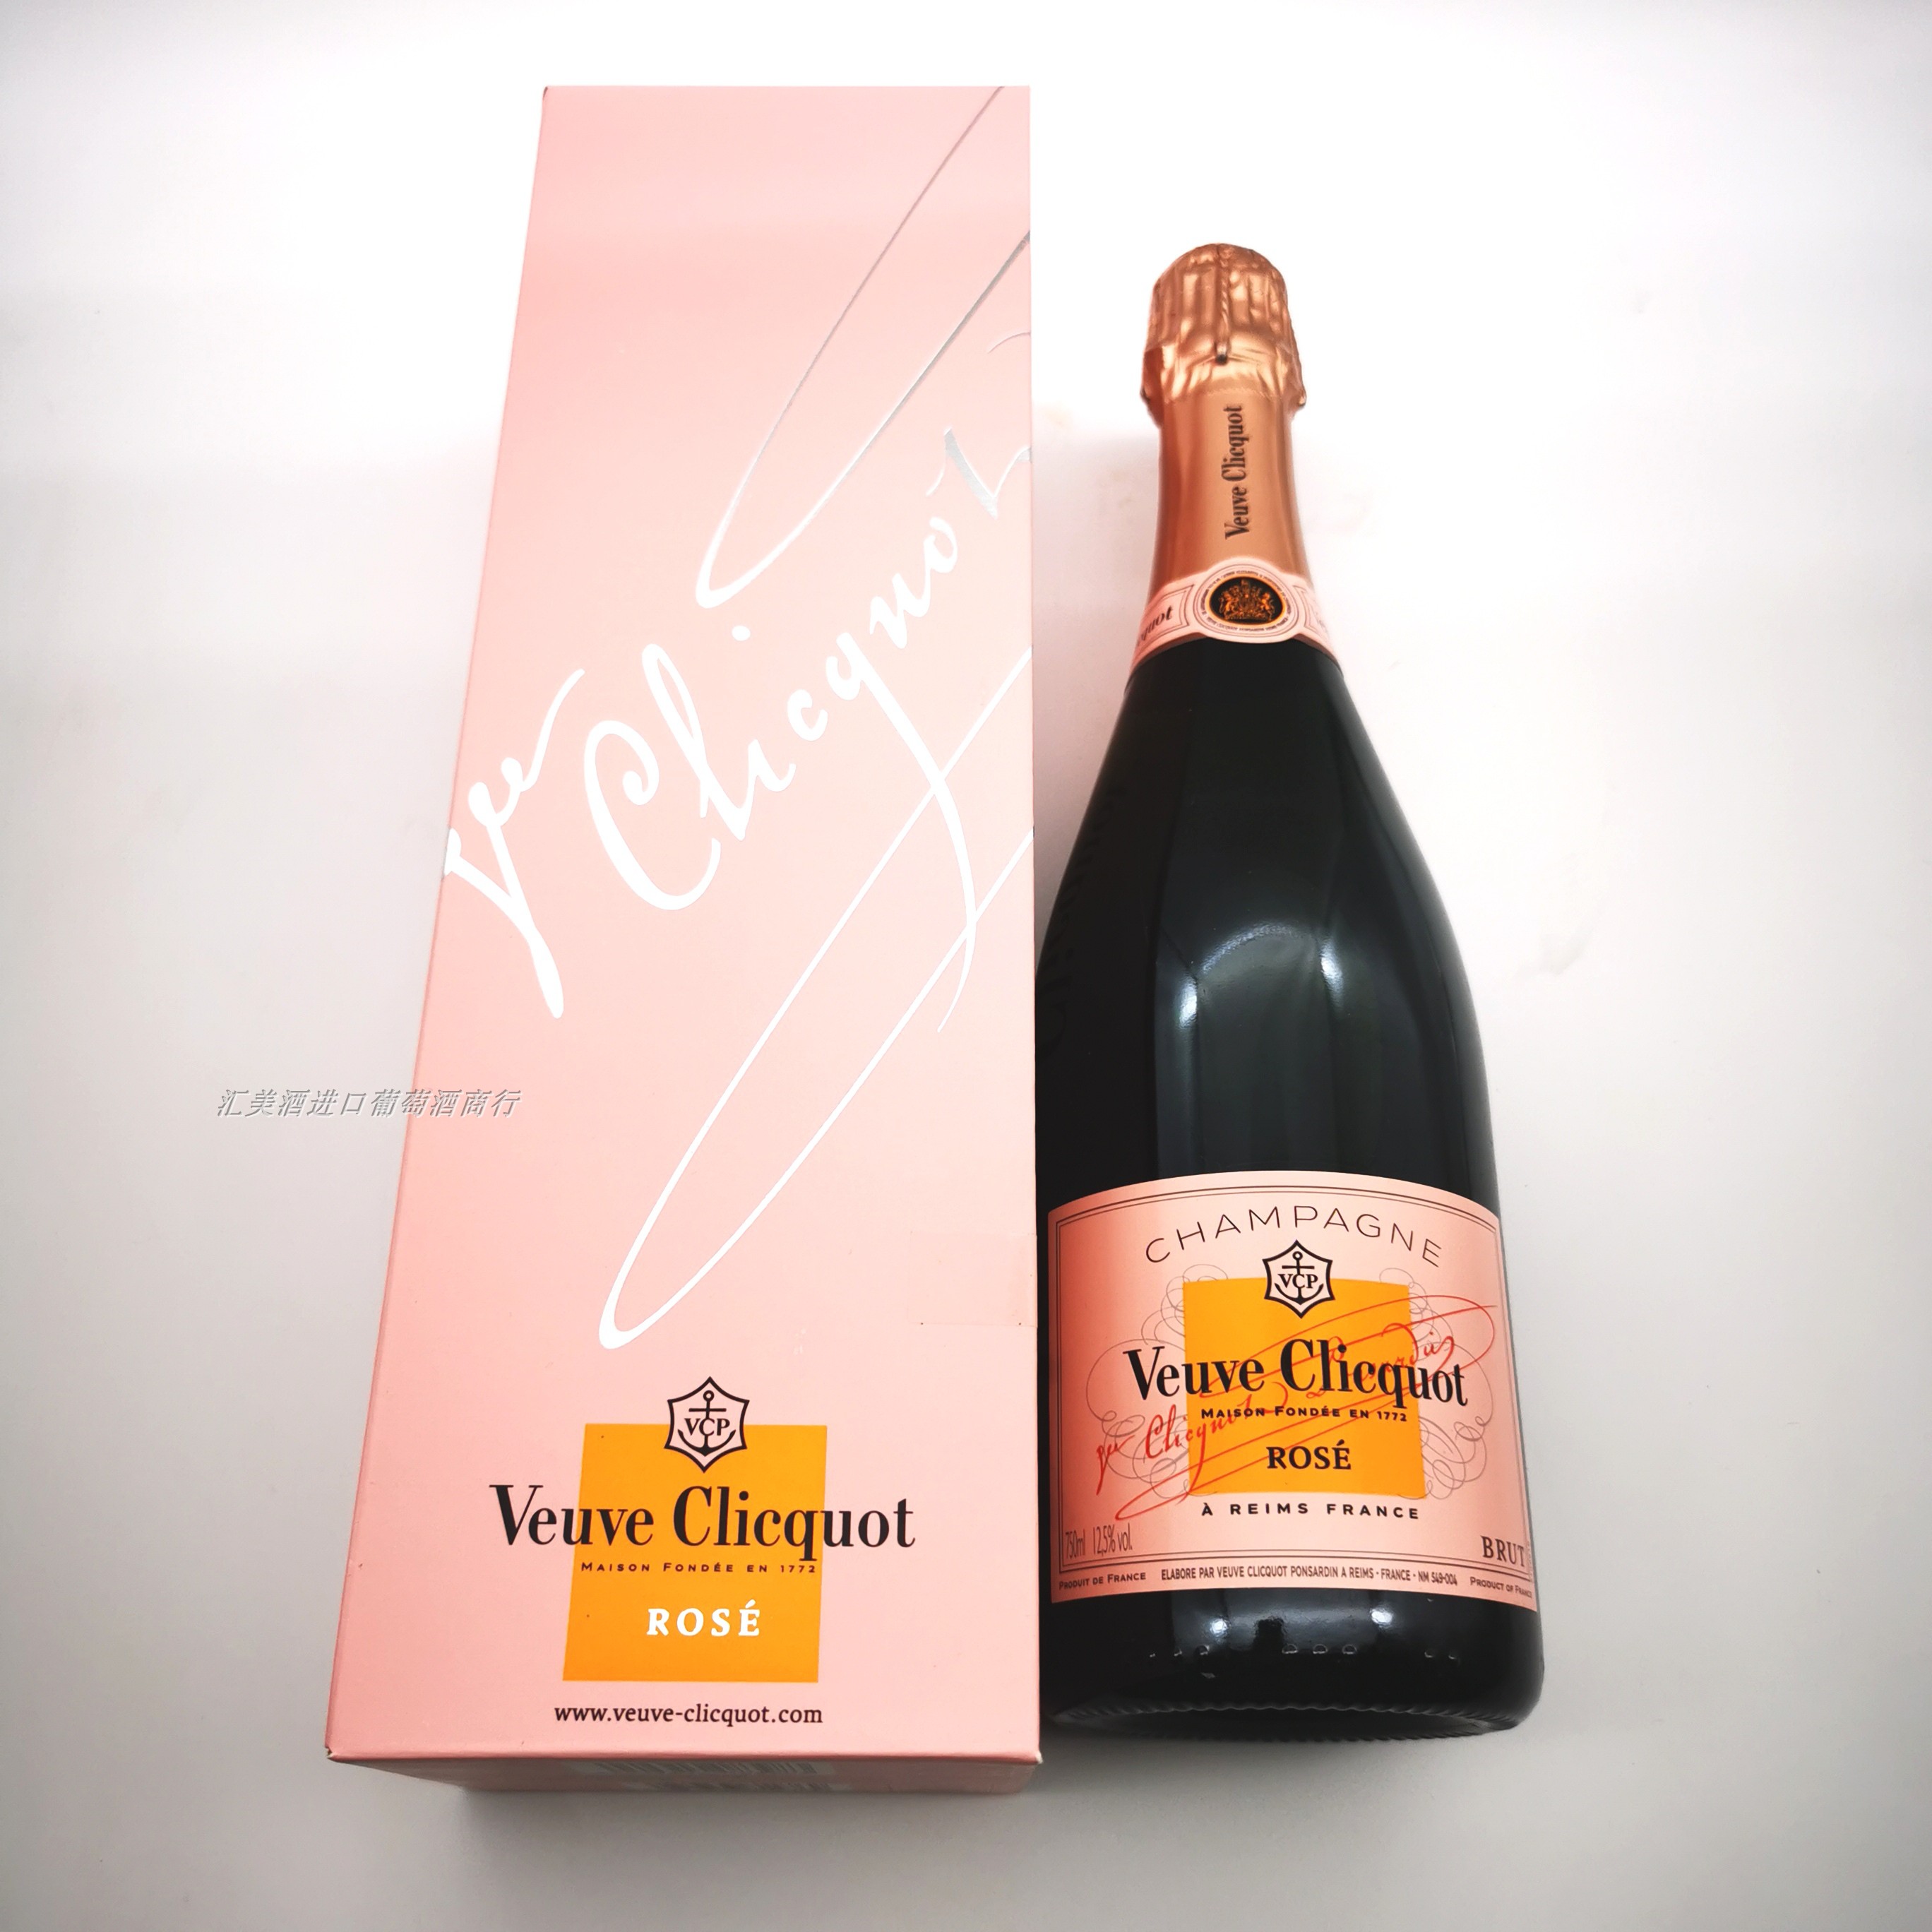 凯歌粉红香槟 Veuve Clicquot Rose 法国 贵妇香槟 酒类 起泡及香槟葡萄酒 原图主图